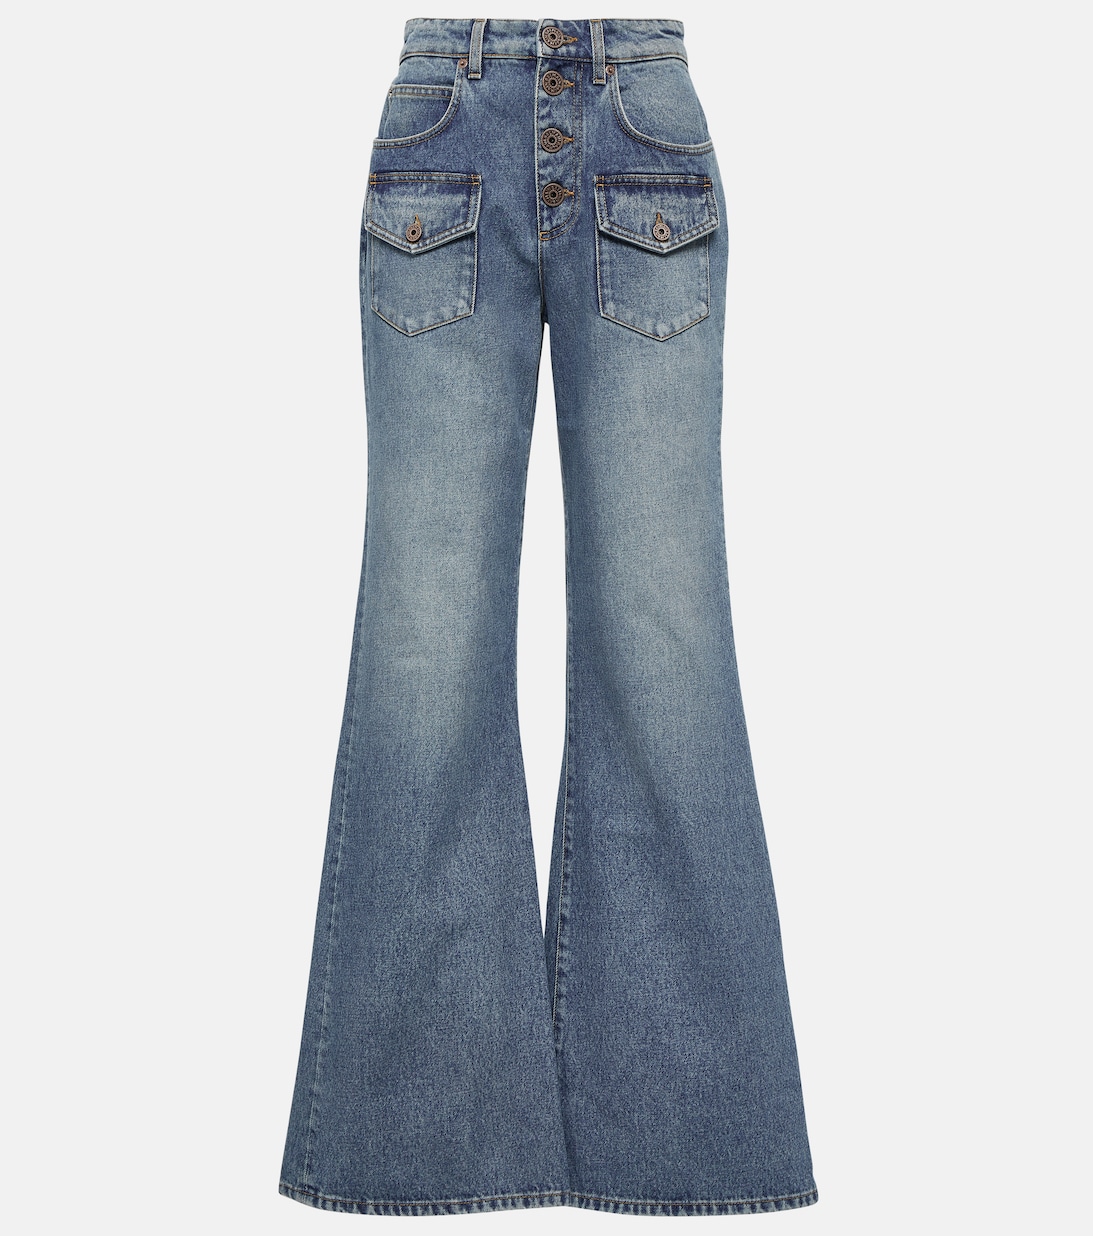 Расклешенные джинсы с высокой посадкой BALMAIN, синий джинсы расклешенные с высокой посадкой s синий